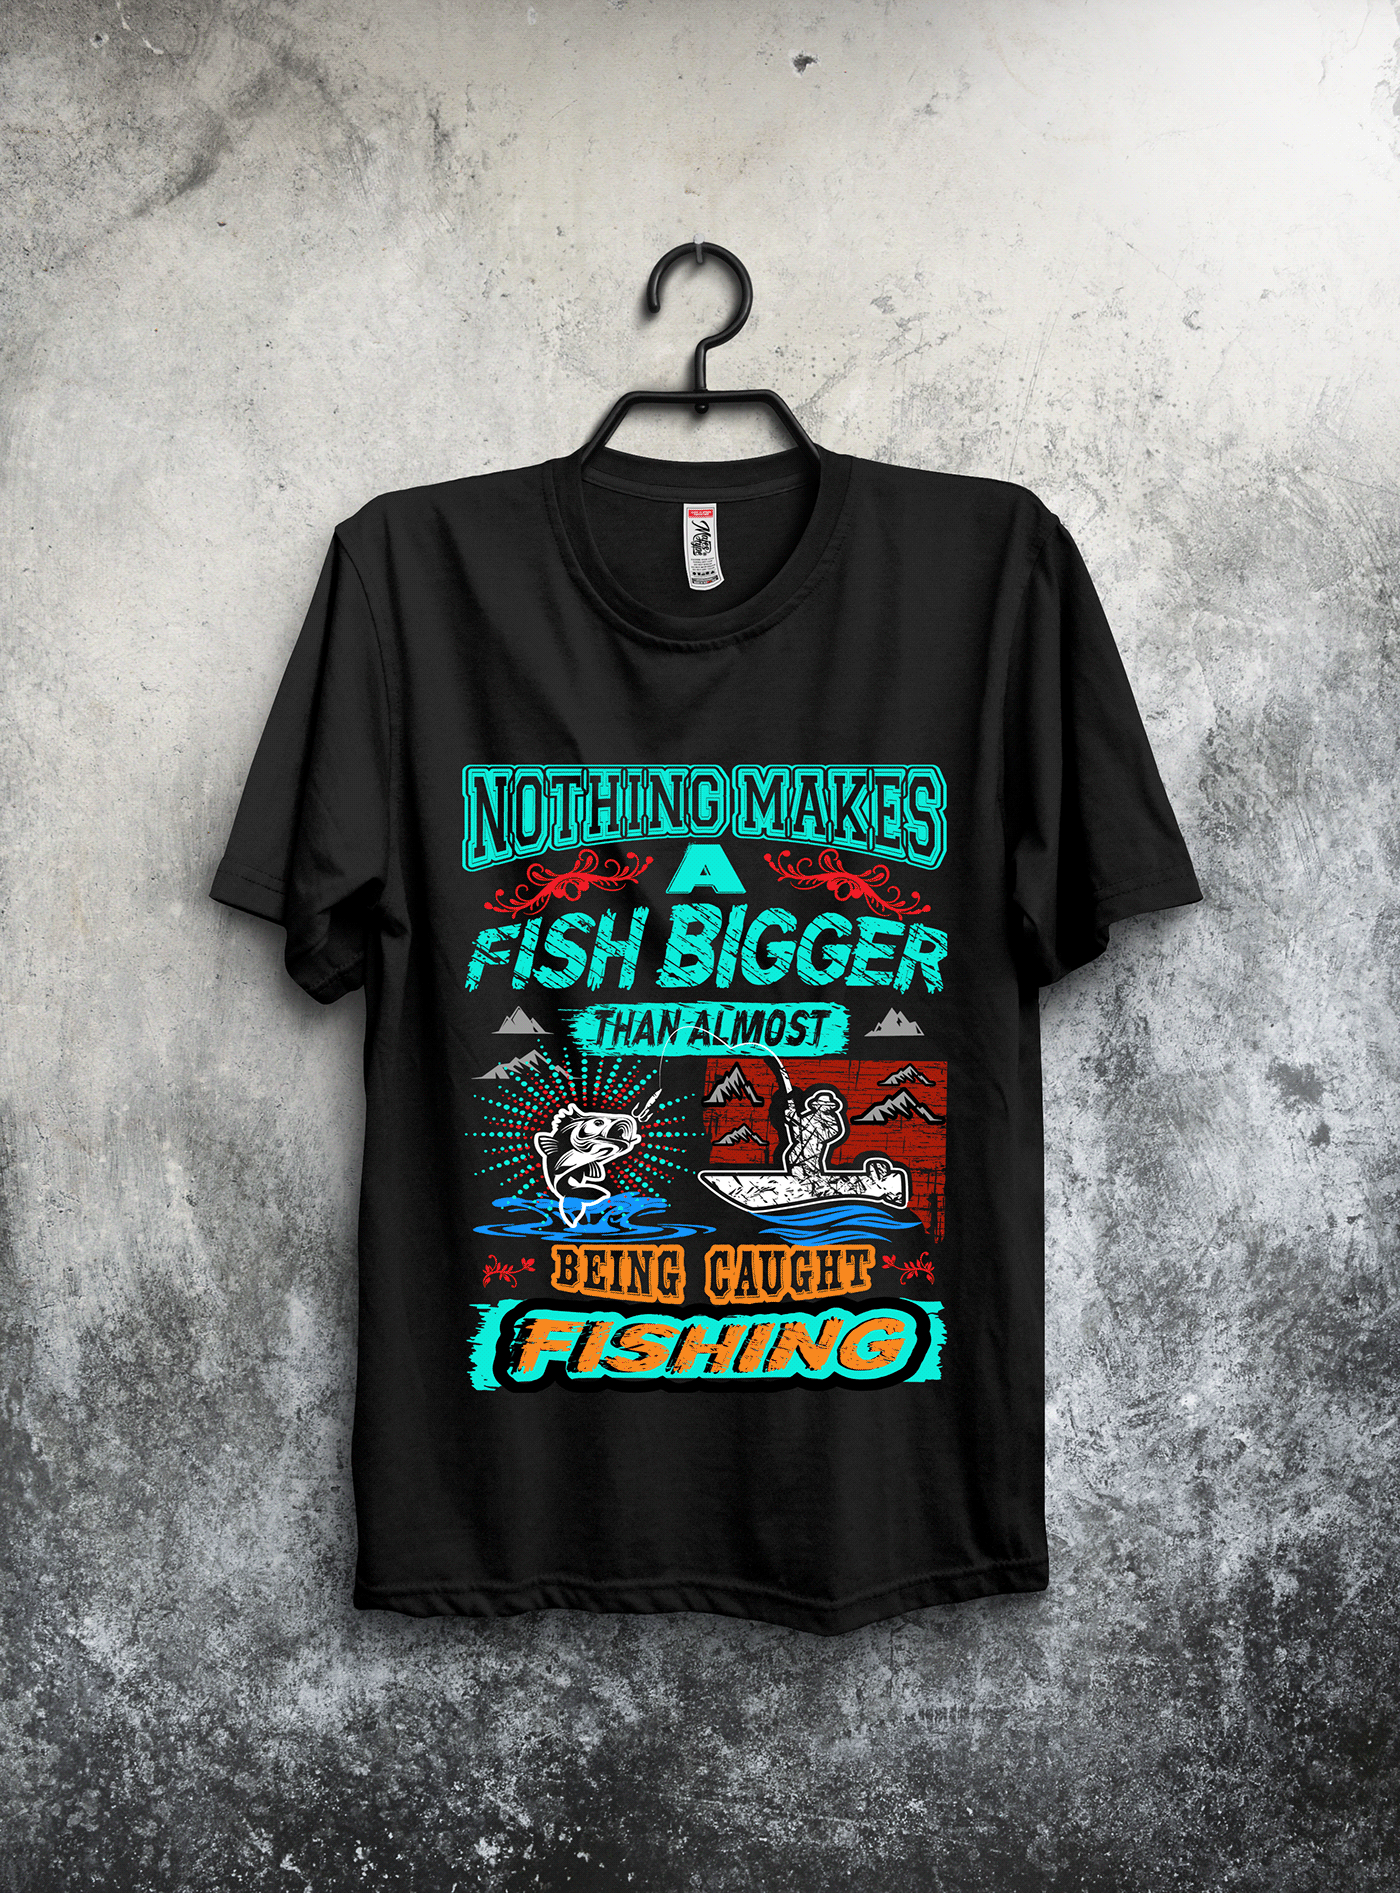 fishing t-shirt t-shirt Fishing T-Shirt Designs Funny Fishing T-Shirts fishing t-shirts amazon bulk t-shirt design custom t-shirt design cat t-sshirt